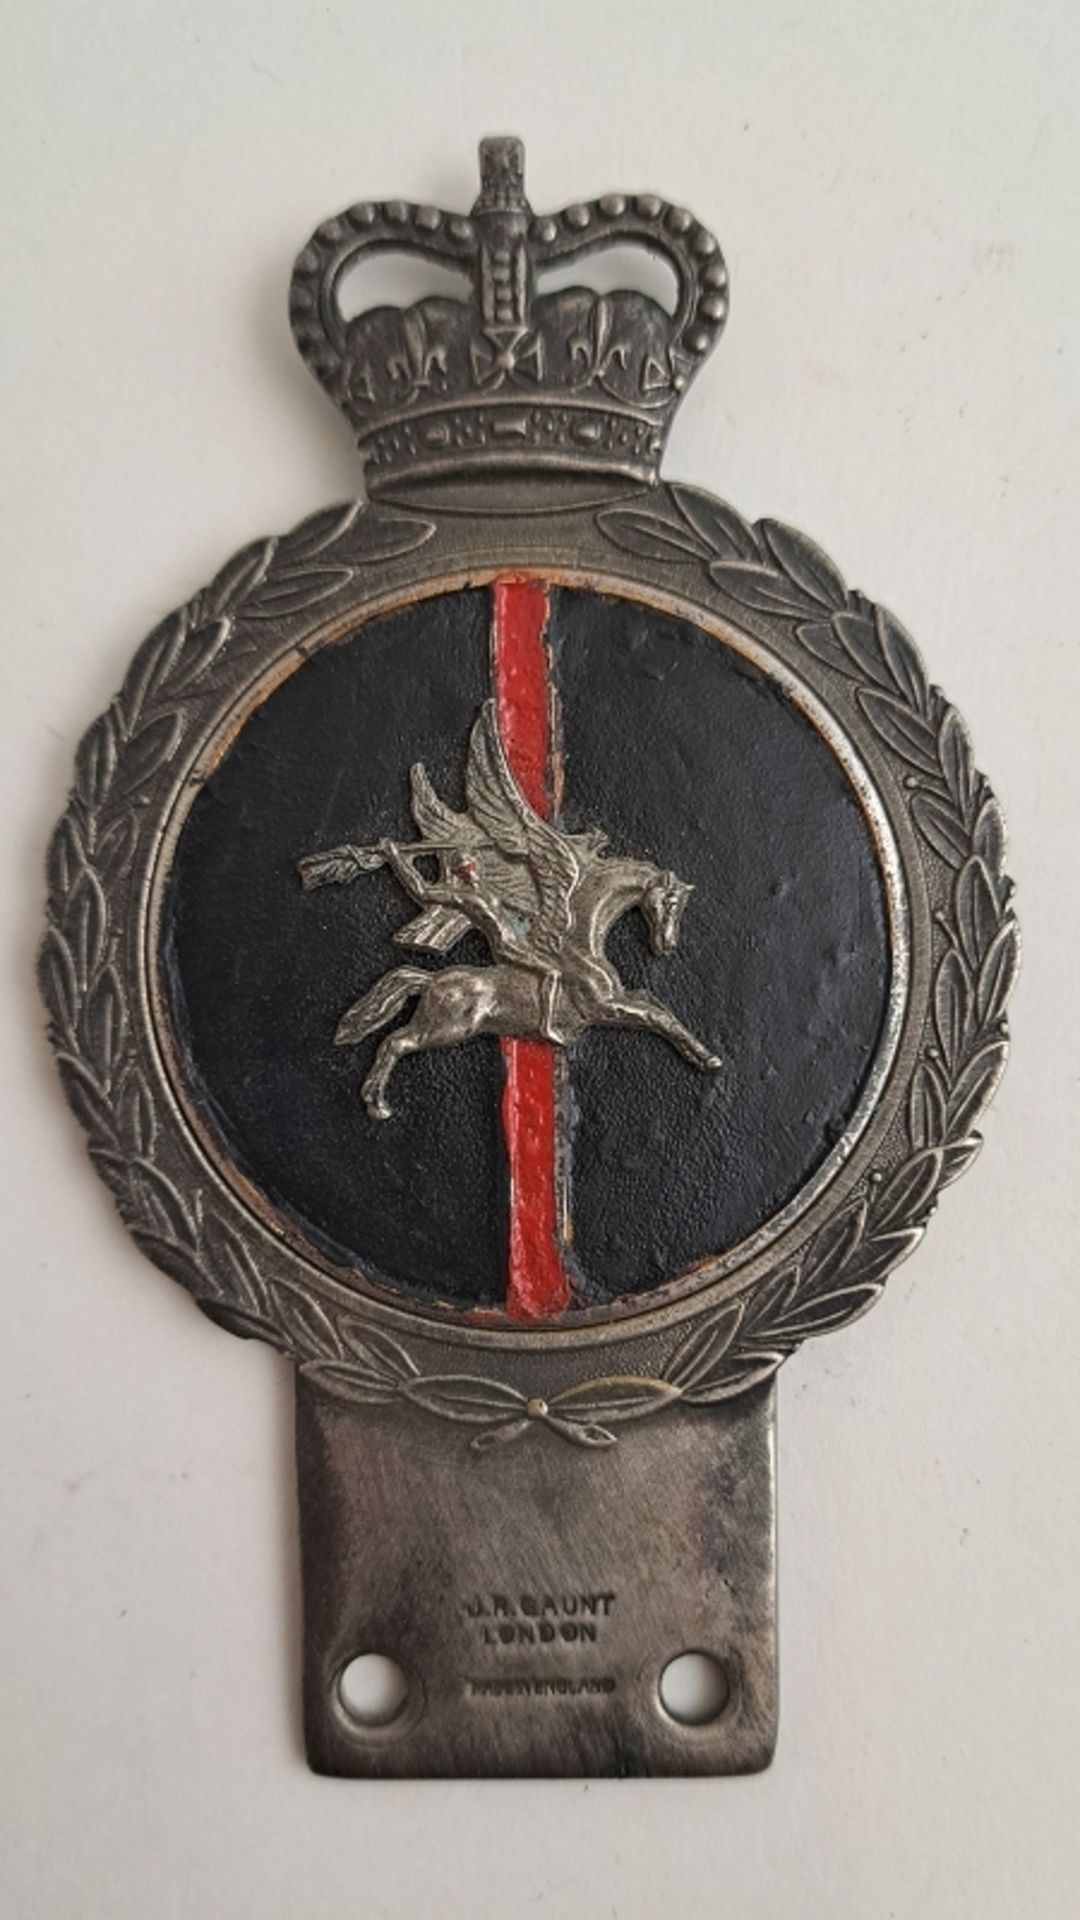 J.R. Gaunt Oldtimer Emblem - Image 2 of 4